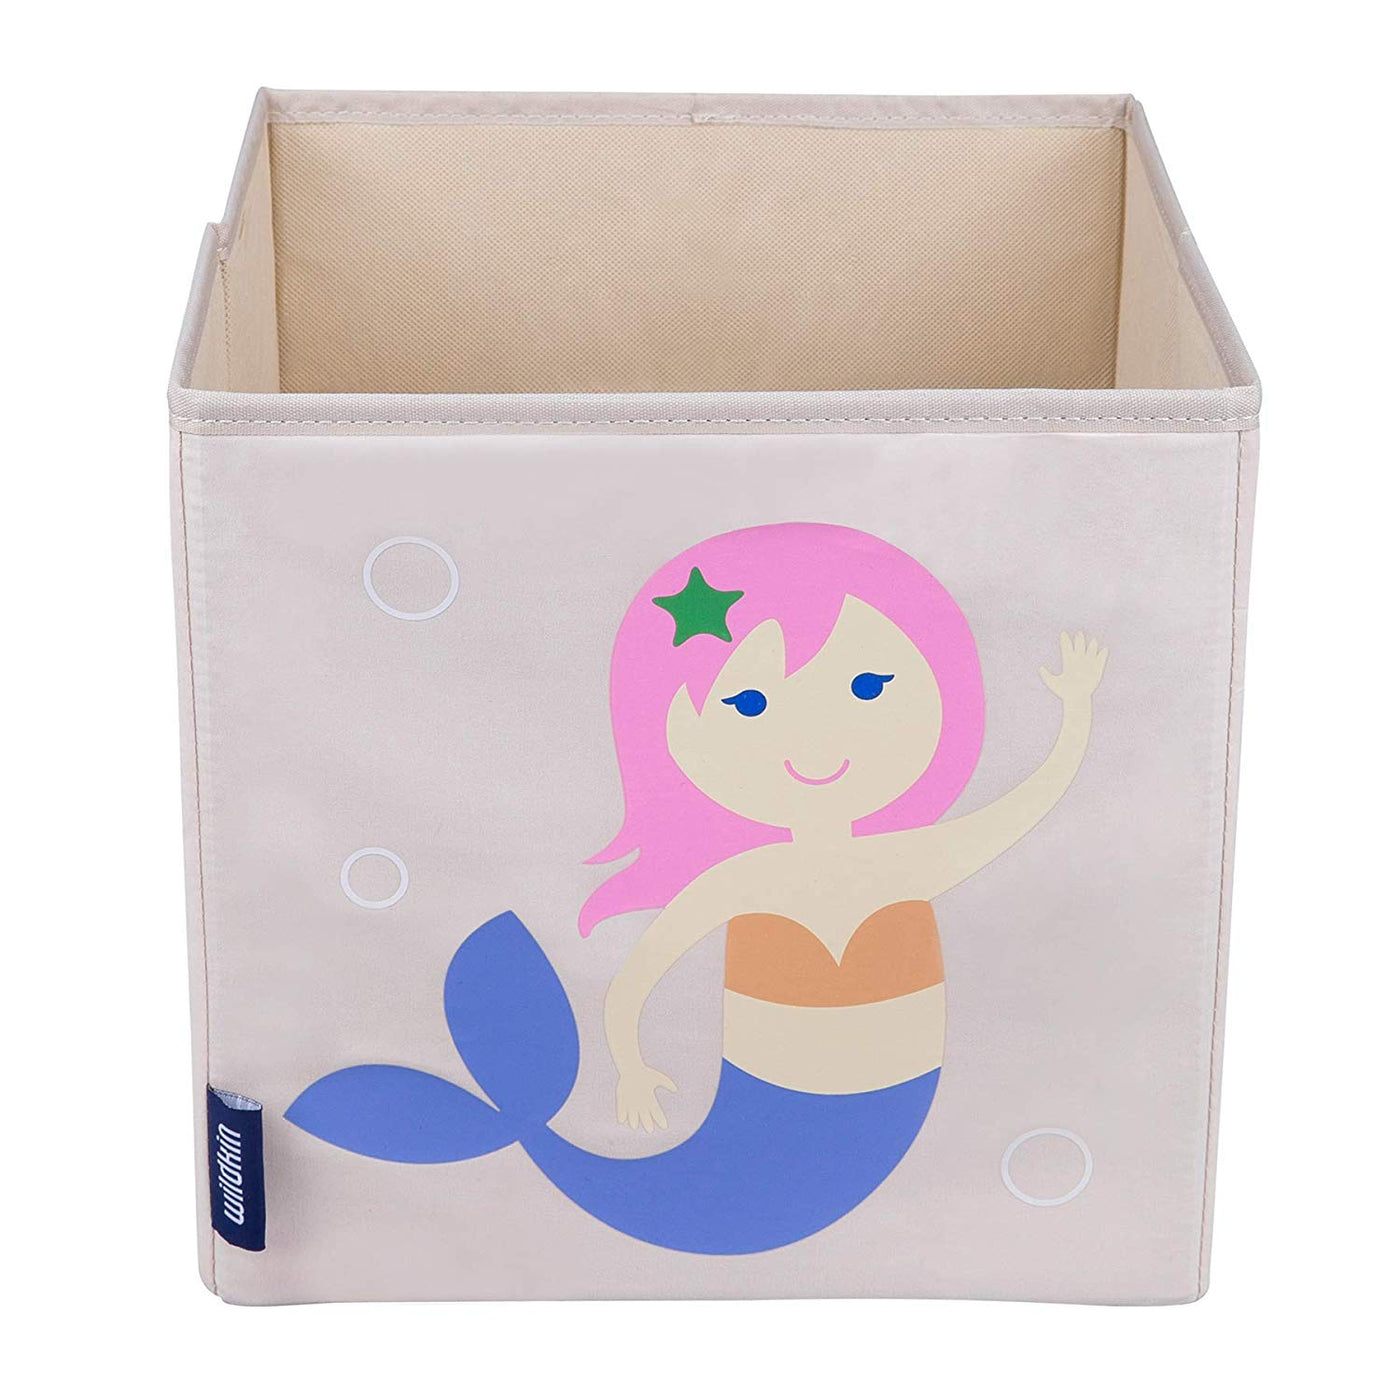 Mermaid 10 Cube Canvas Toy Storage Box / Bin –